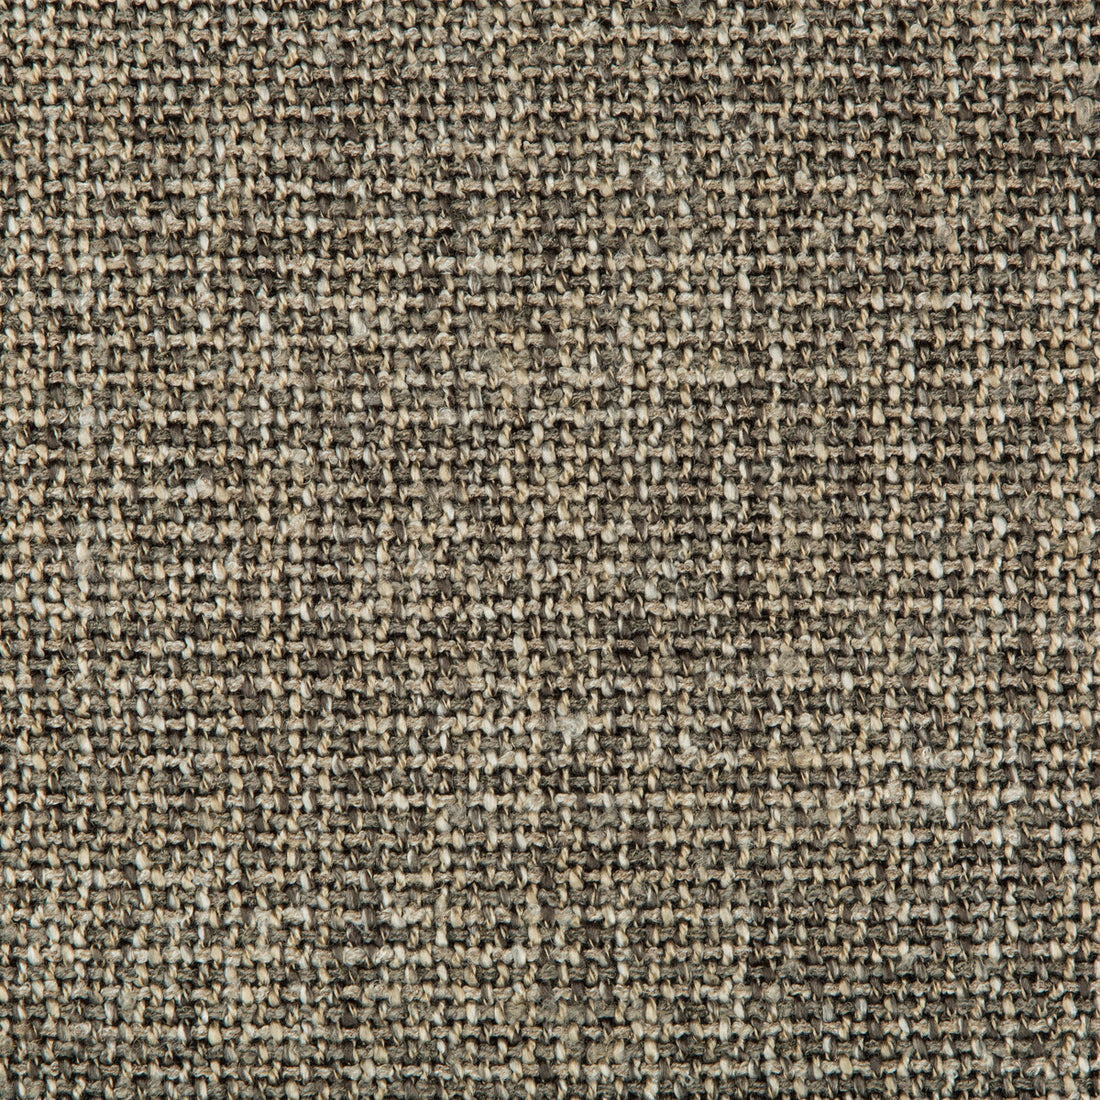 Kravet Design fabric in 35635-11 color - pattern 35635.11.0 - by Kravet Design